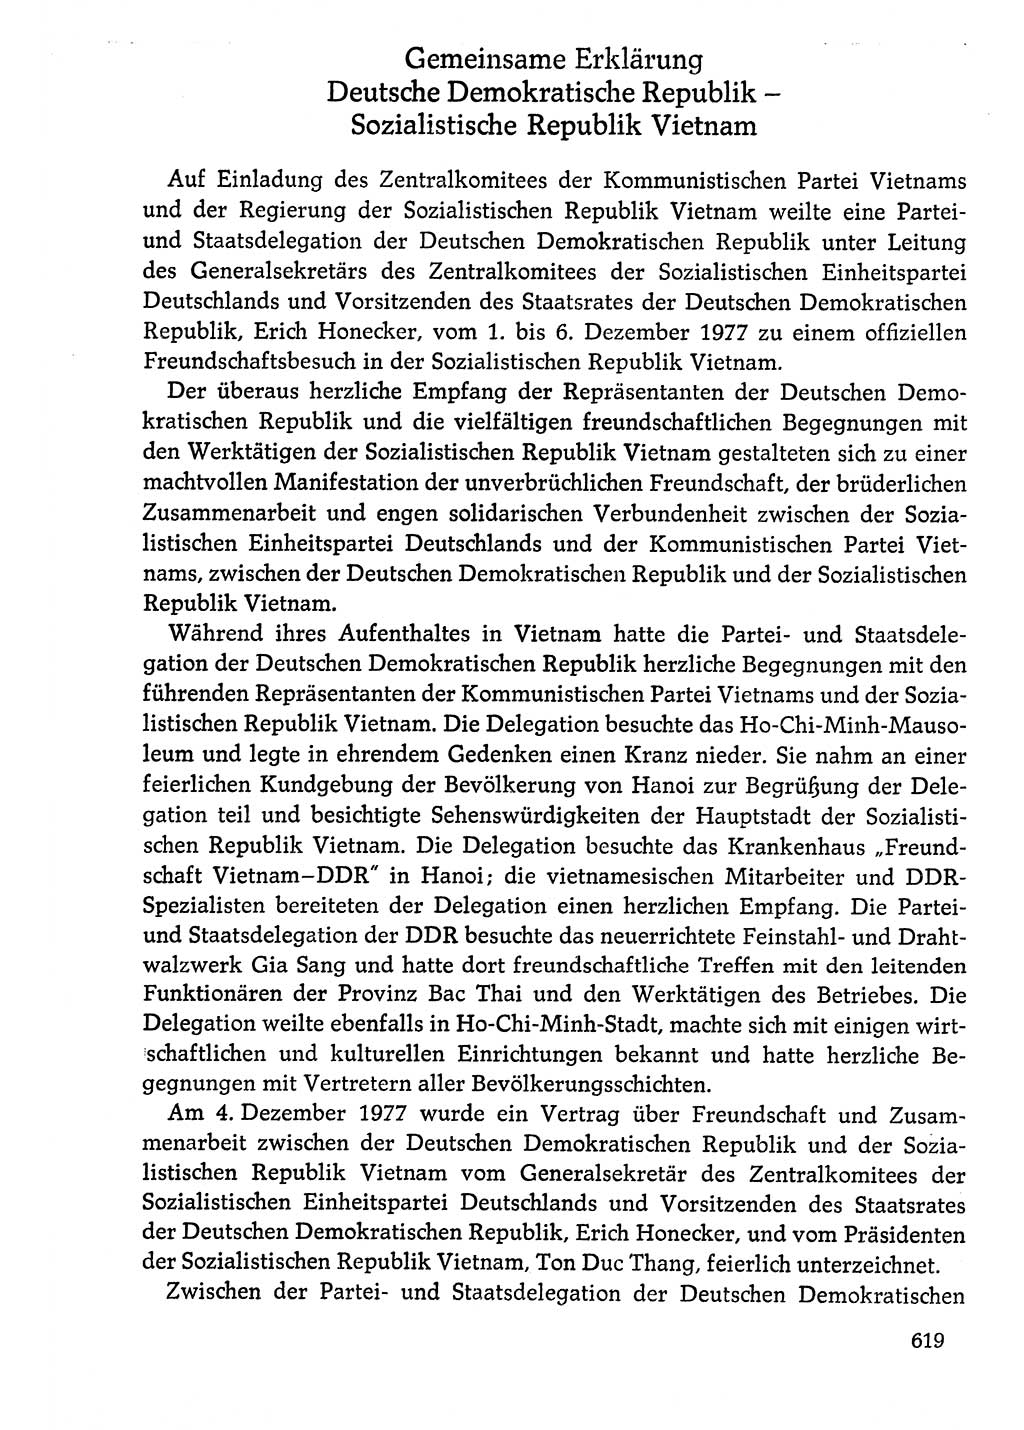 Dokumente der Sozialistischen Einheitspartei Deutschlands (SED) [Deutsche Demokratische Republik (DDR)] 1976-1977, Seite 619 (Dok. SED DDR 1976-1977, S. 619)